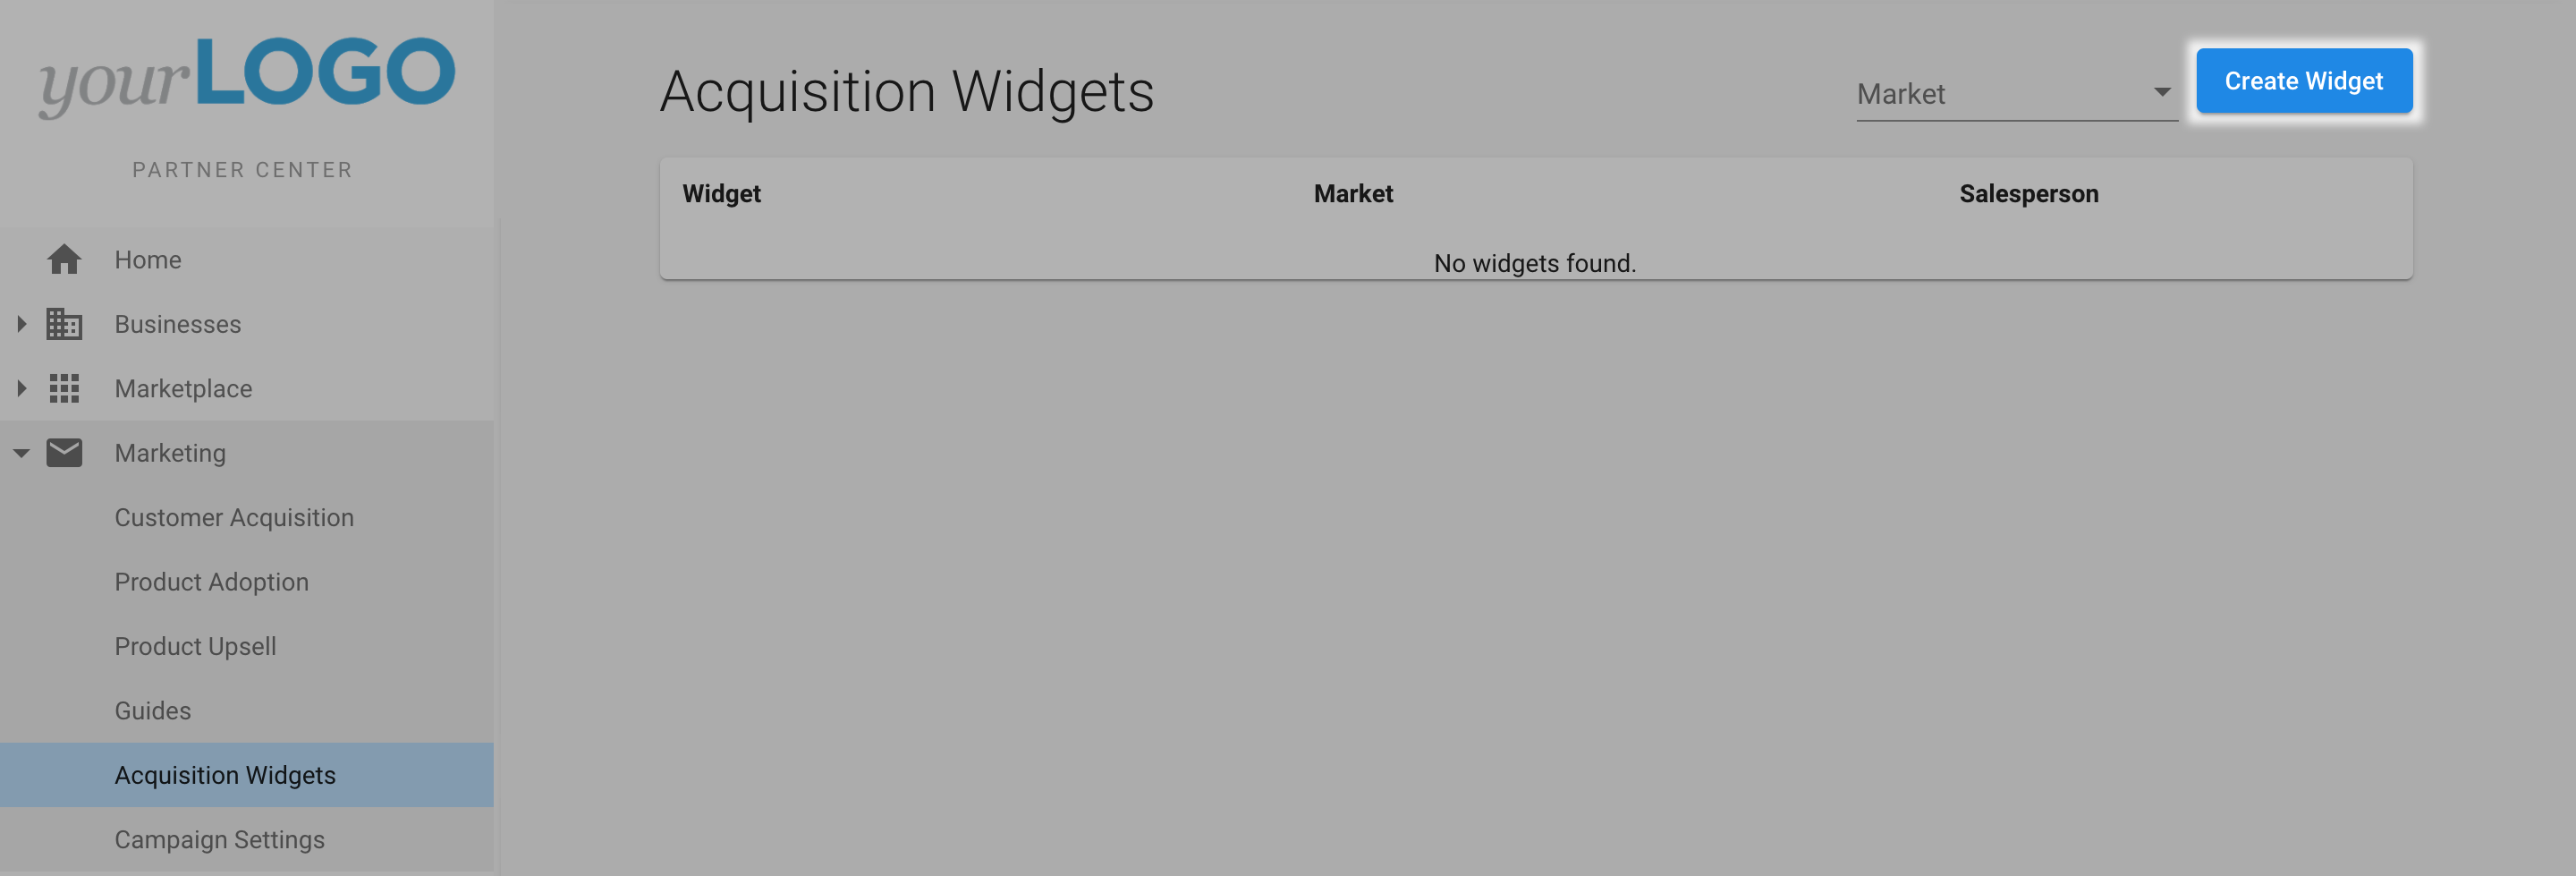 Acquisition_Widget_1.png